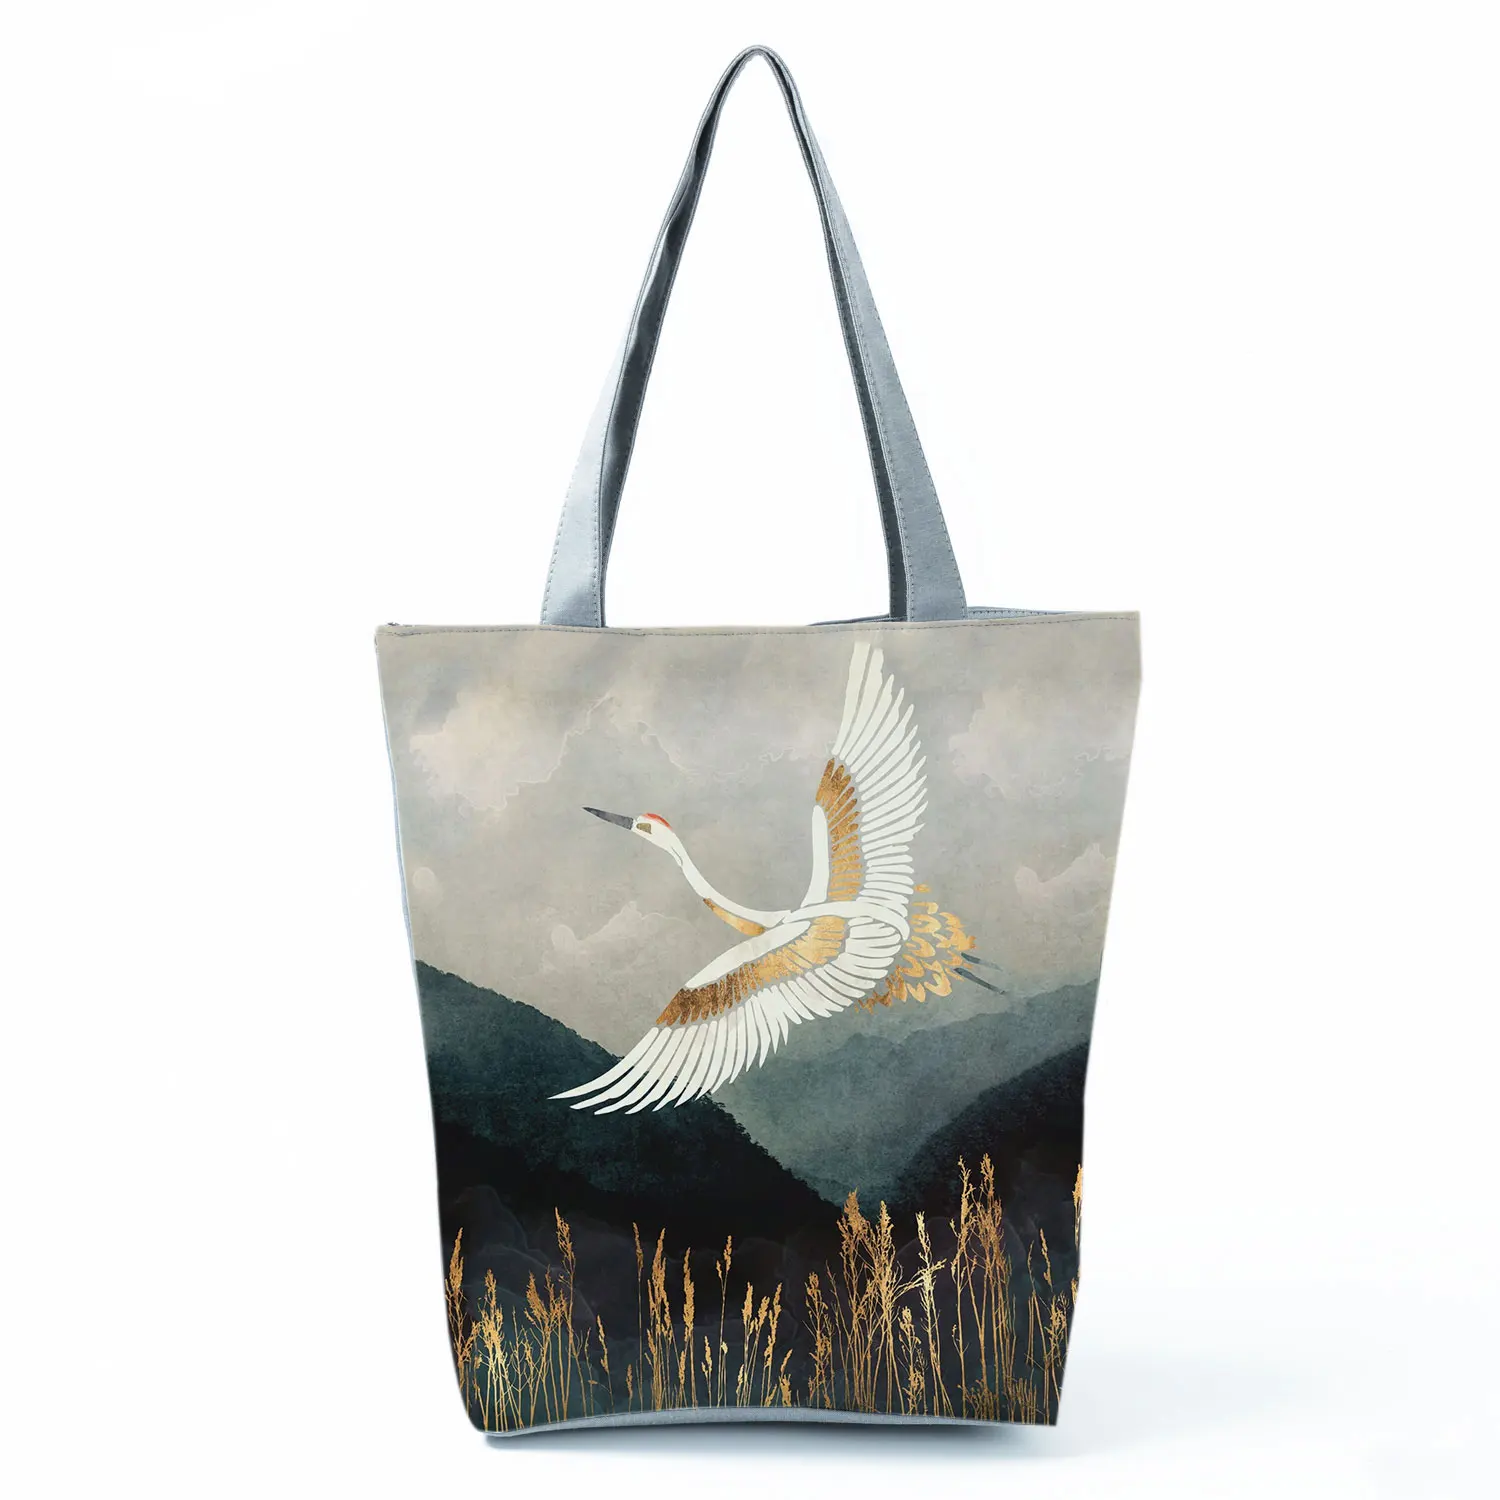 Фото Ukiyoe дизайнерская сумка с принтом пейзажа японская Повседневная для покупок